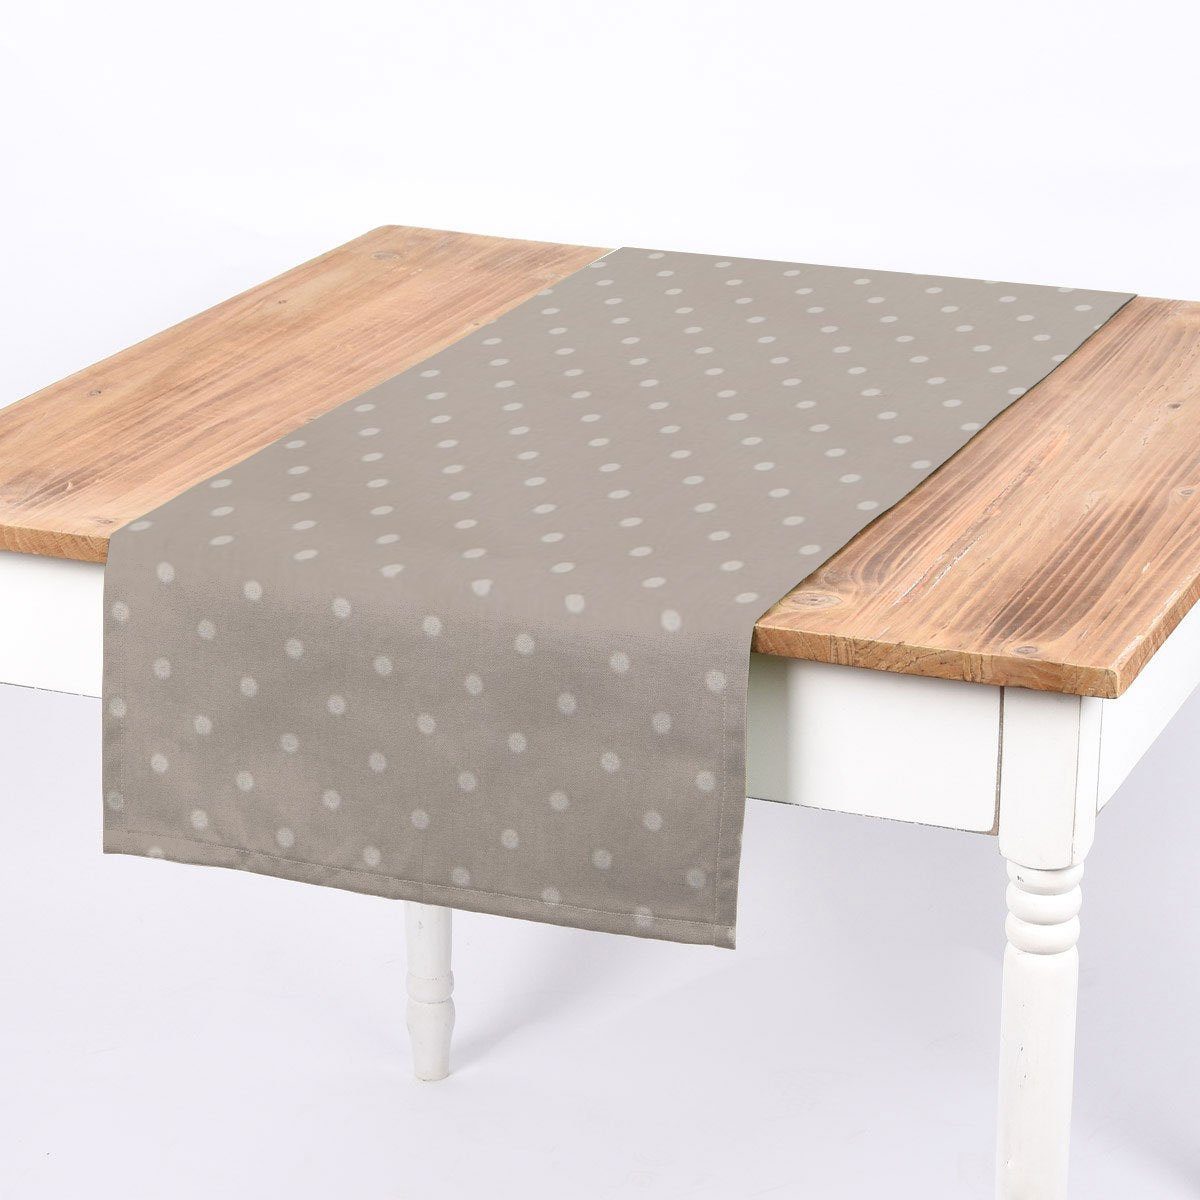 SCHÖNER LEBEN. Tischläufer SCHÖNER LEBEN. Tischläufer Full Stop Punkte stein grau weiß 40x160cm, handmade